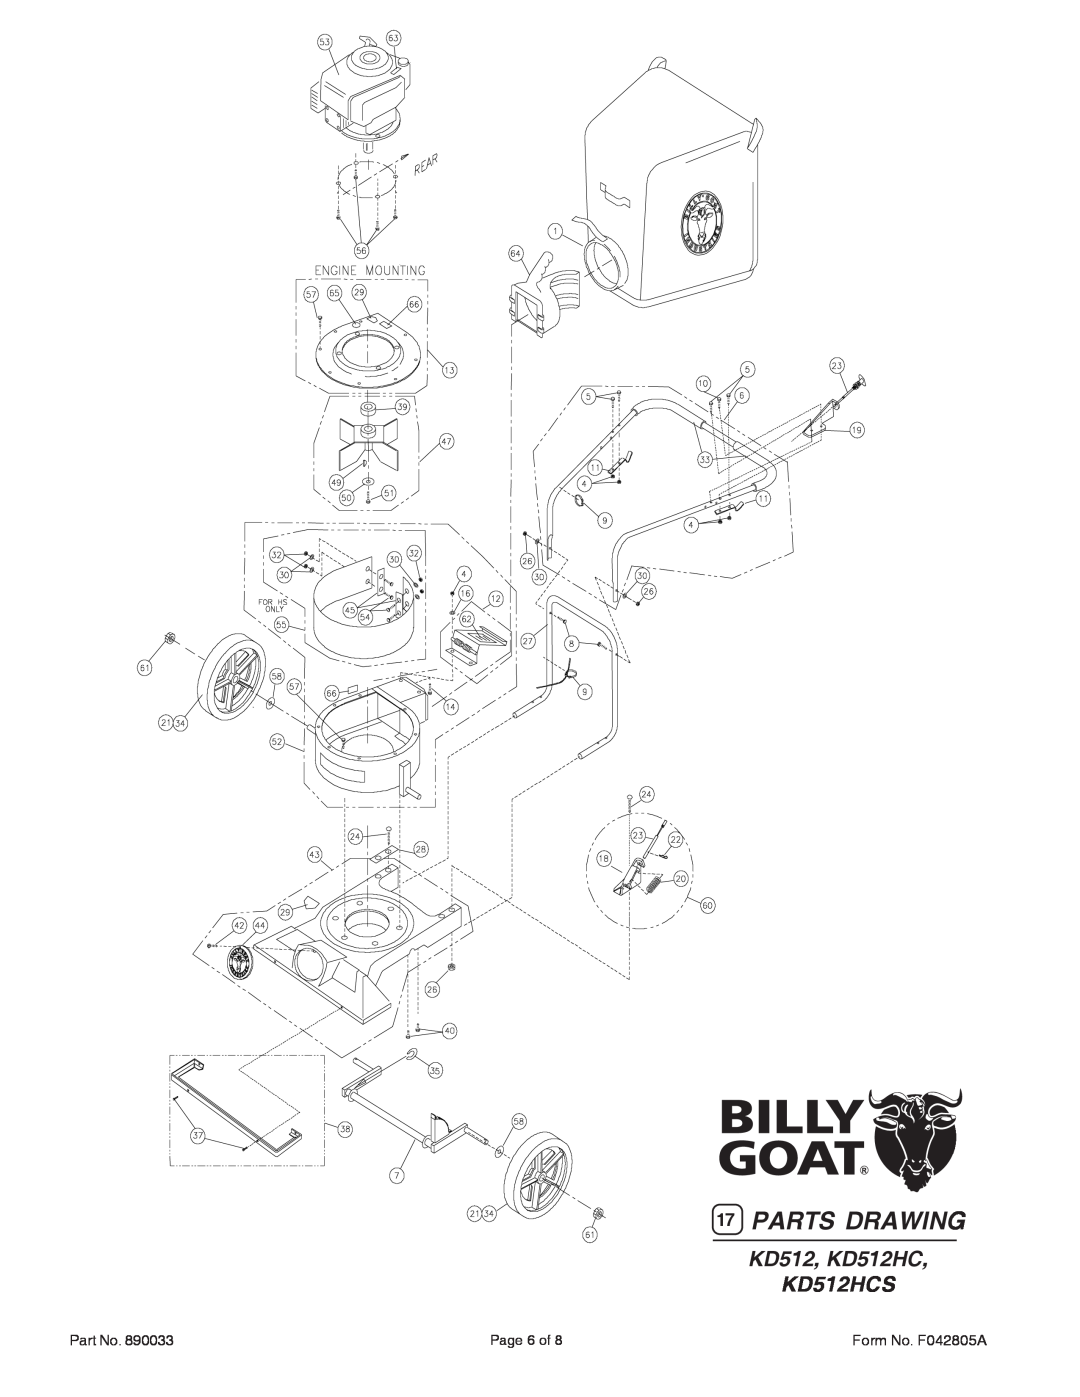 Billy Goat KD512, KD512HC, KD512HCS specifications Parts Drawing, KD512, KD512HC KD512HCS, Page 6 of, Form No. F042805A 